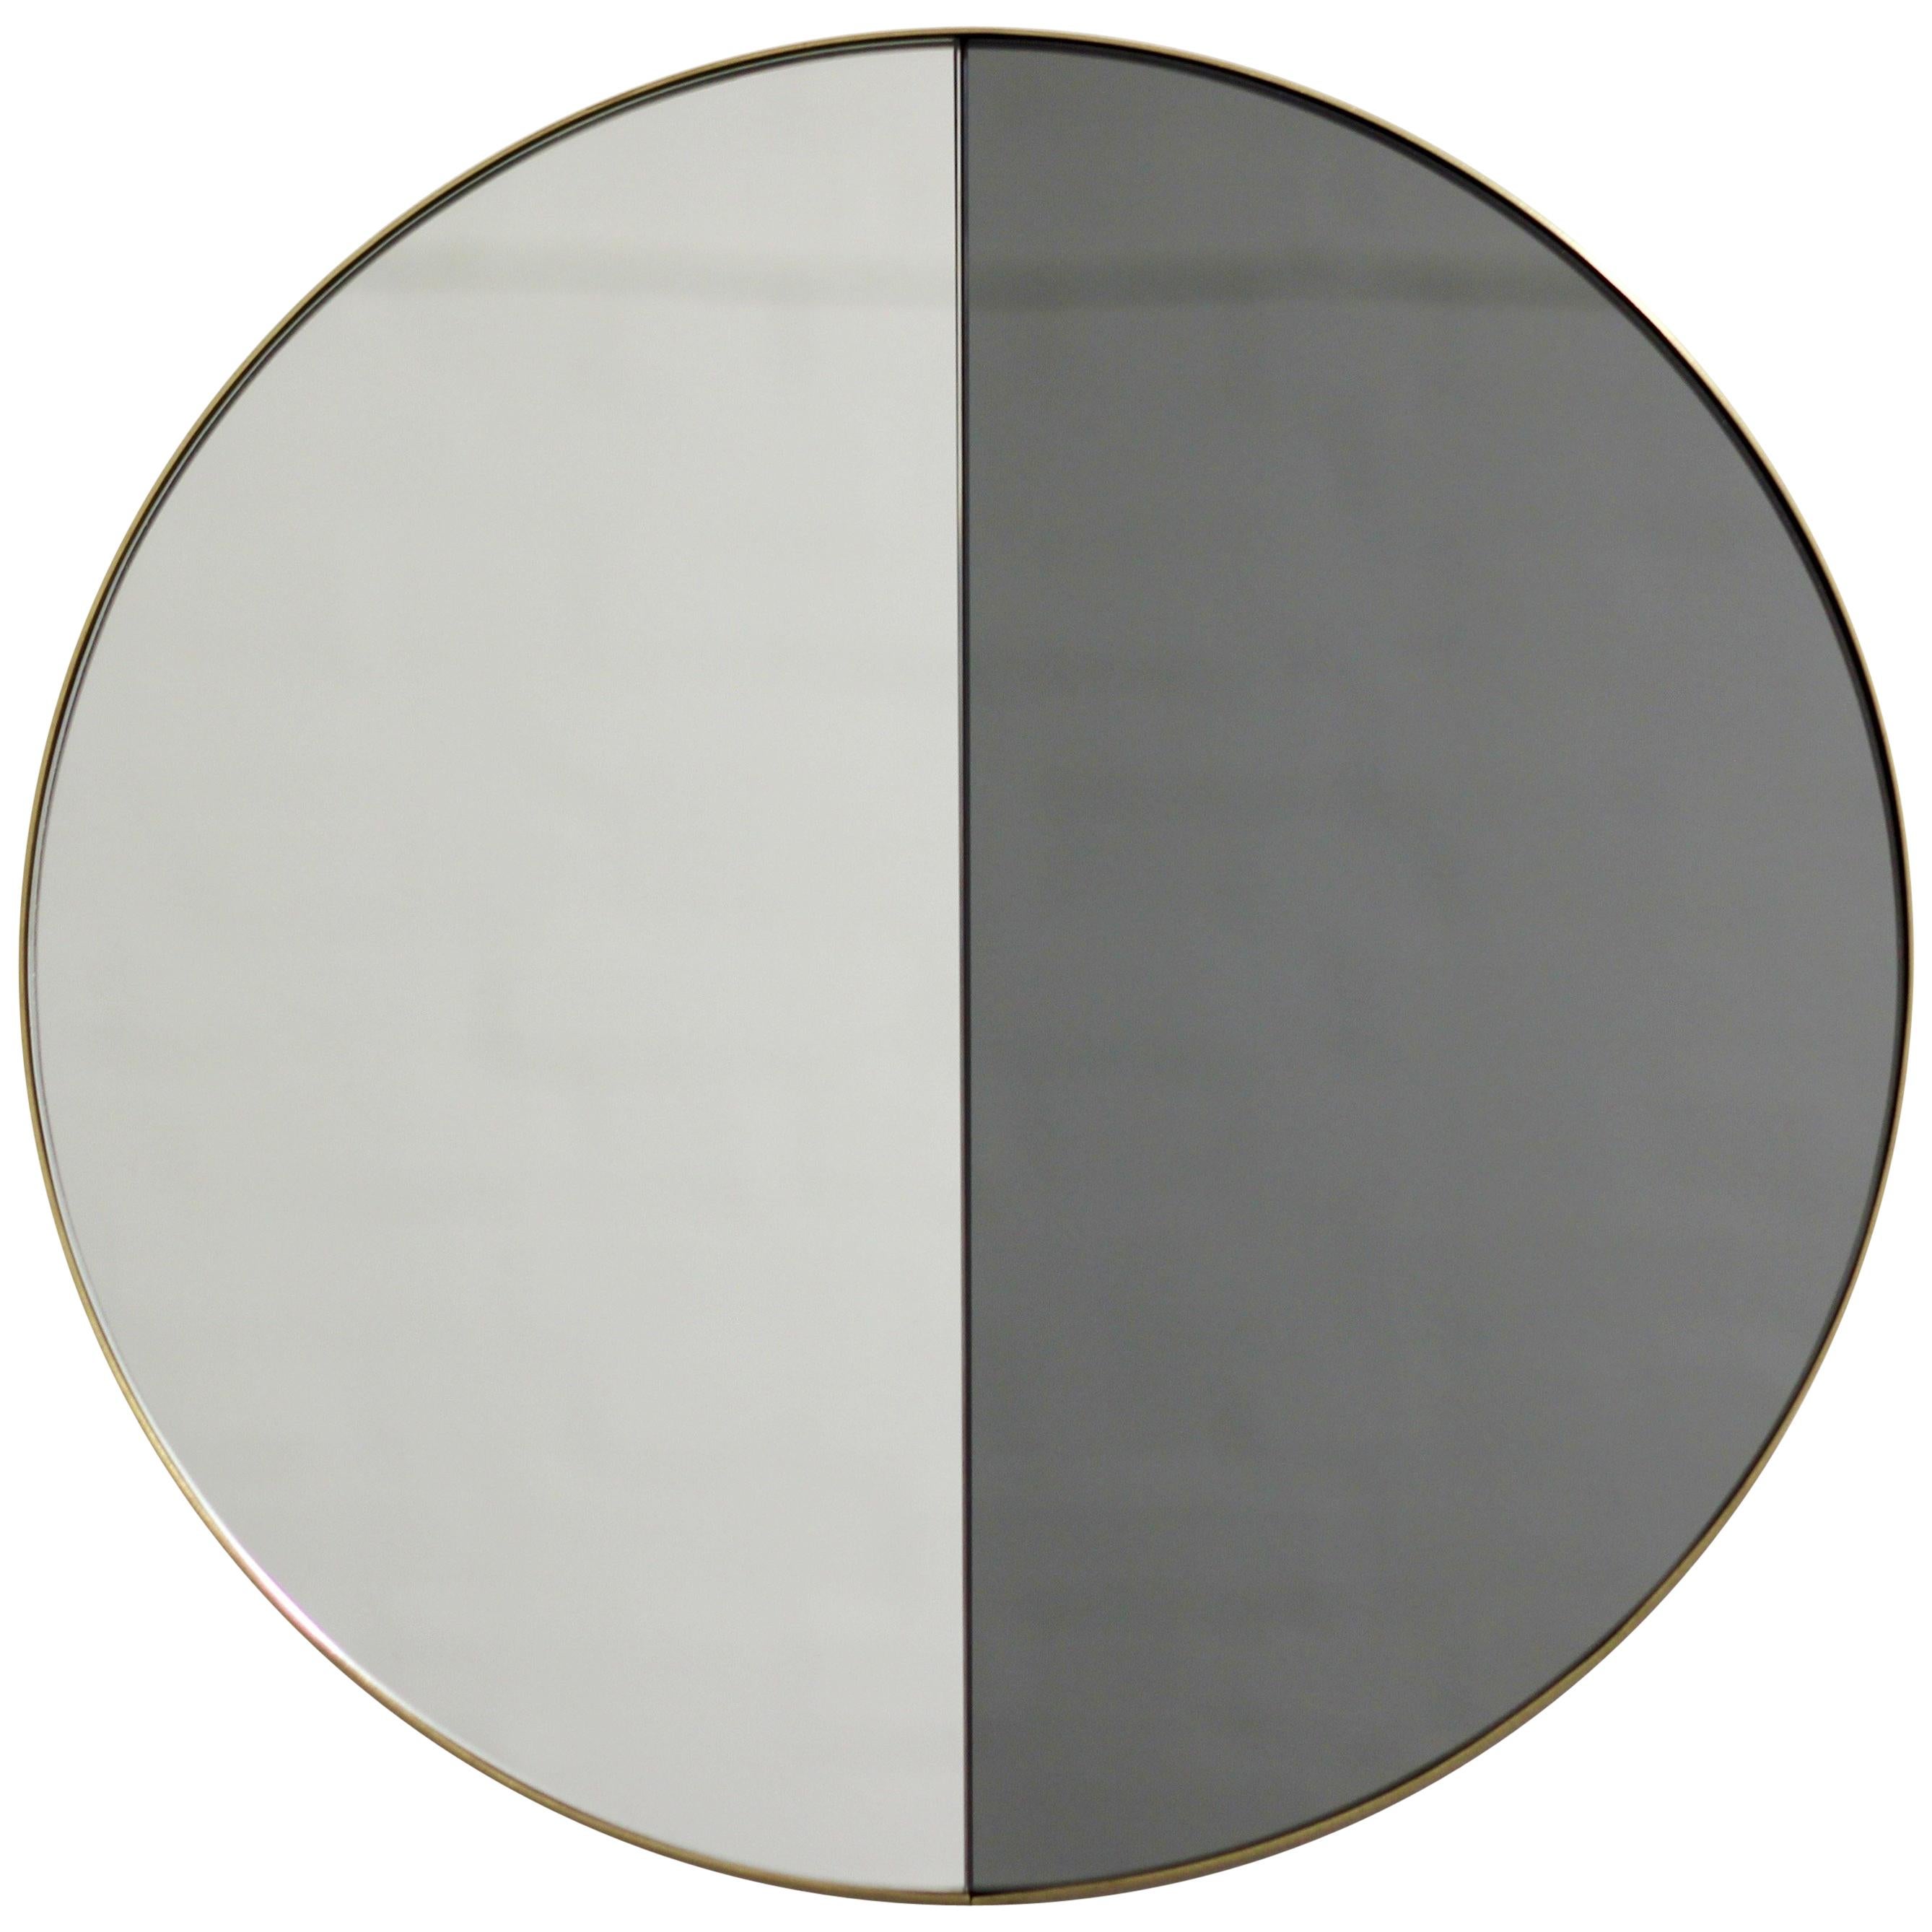 Miroir contemporain mixte noir et argenté teinté Dualis Orbis avec un cadre en laiton brossé. Conçu et fabriqué à la main à Londres, au Royaume-Uni.

Equipés d'un ingénieux système de tasseaux à la française, ils peuvent être suspendus au mur dans